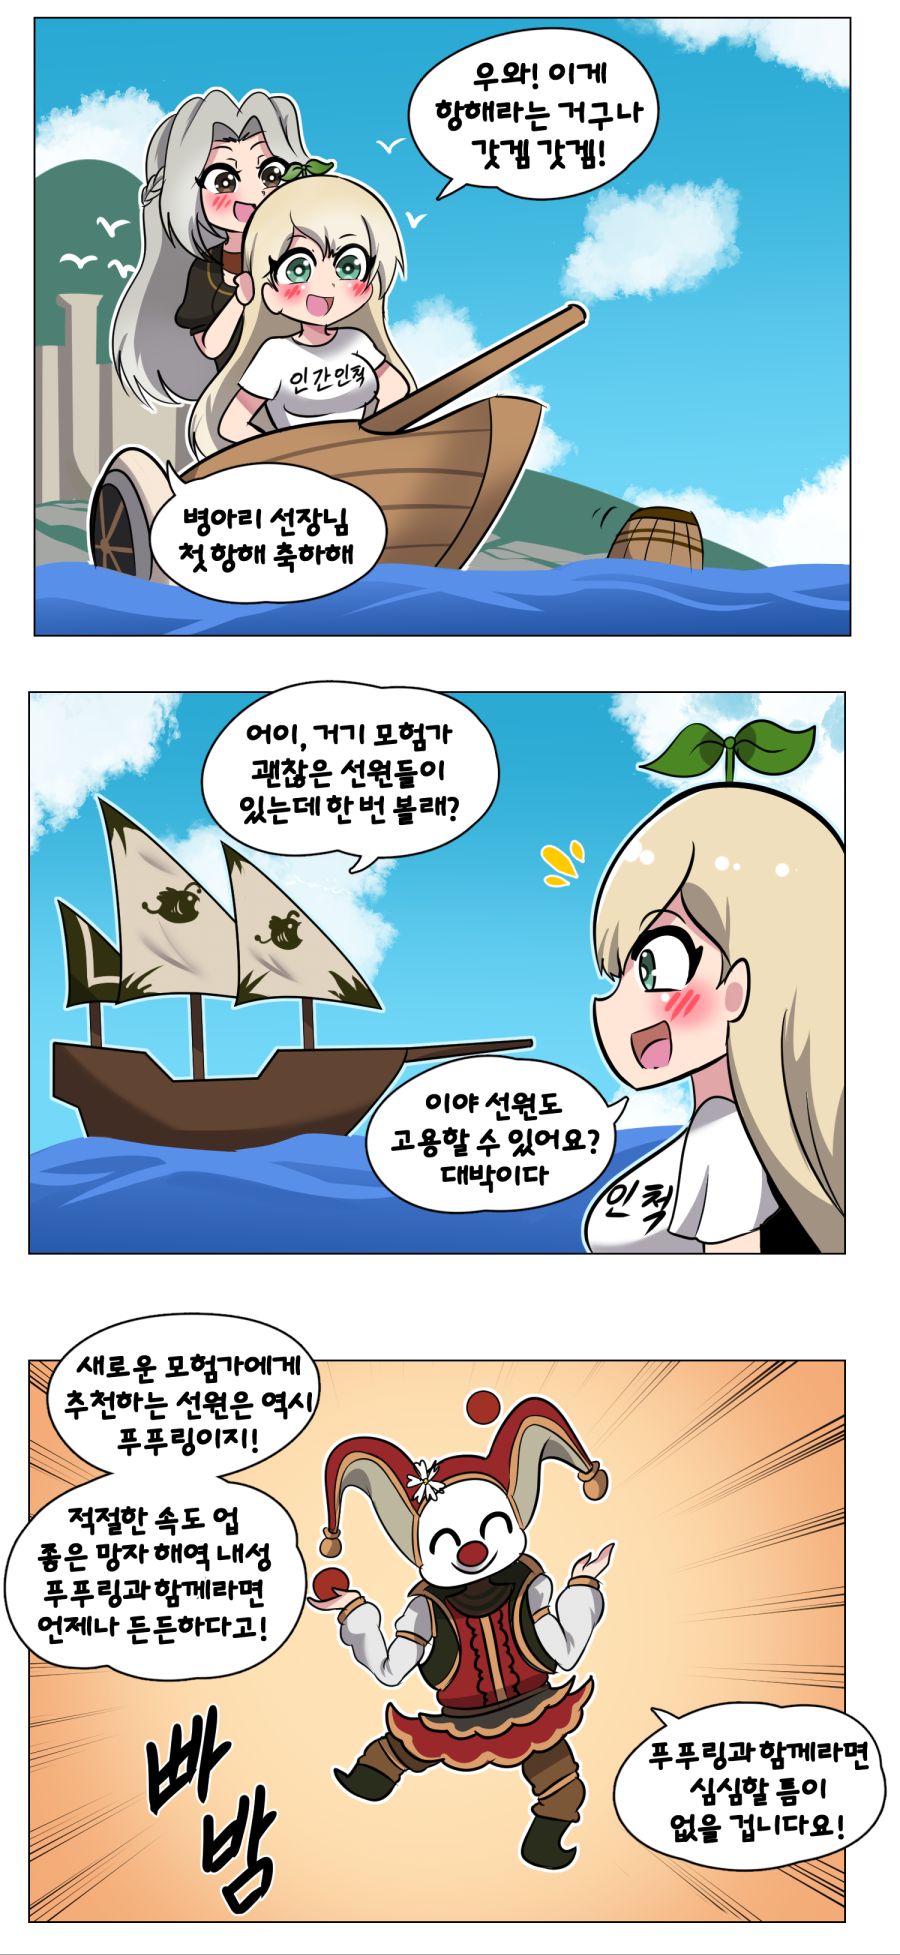 로아 만화 완성3 트위터.png